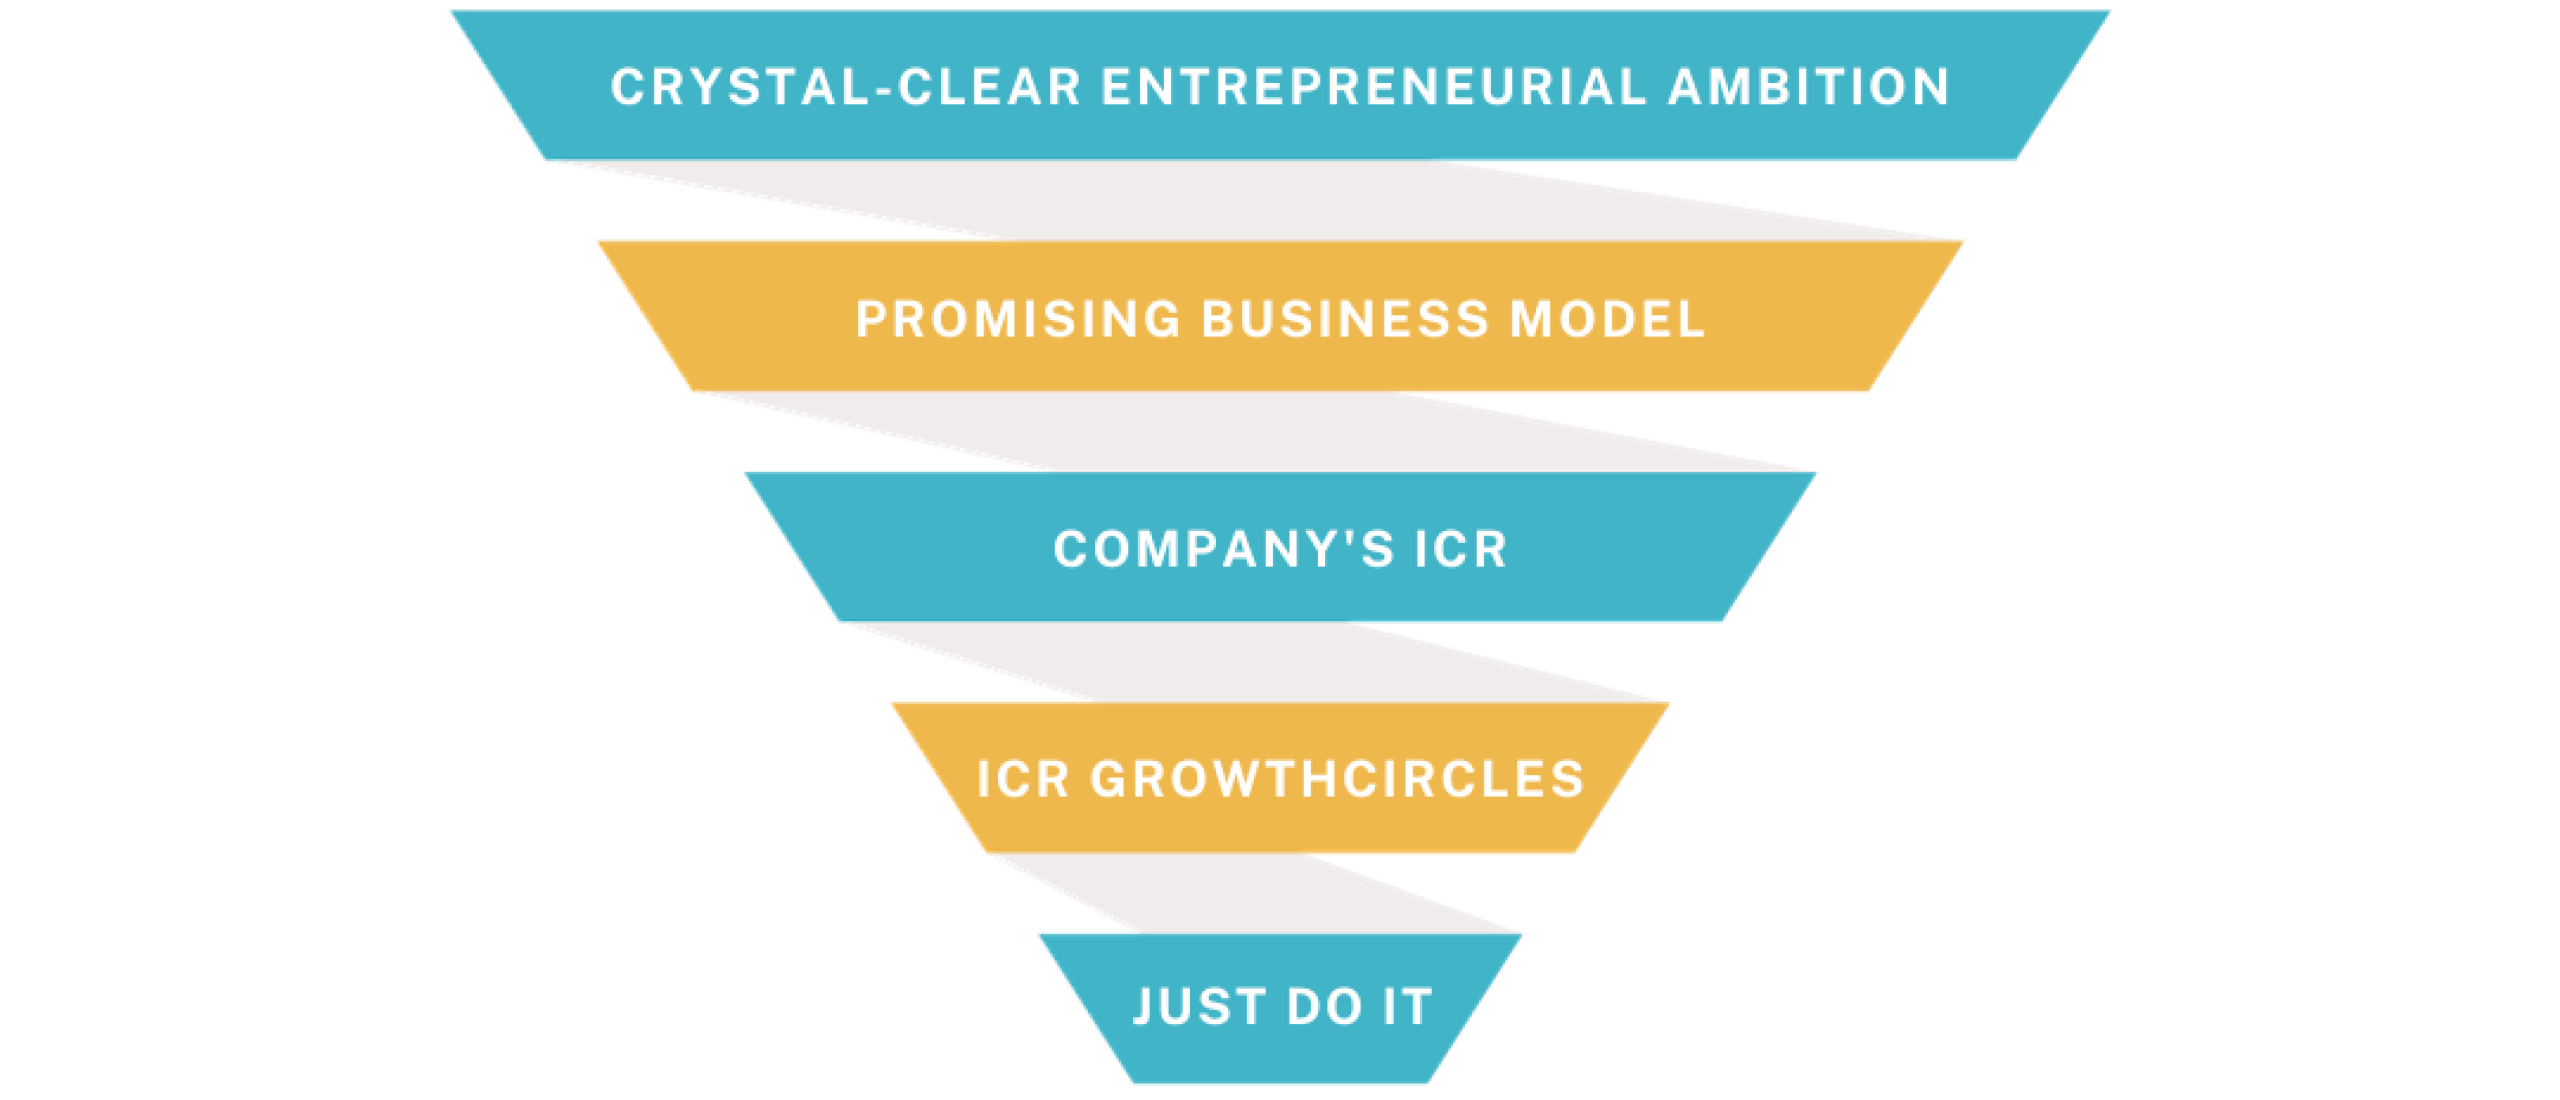 Richting geven vanuit ondernemersambitie en kansrijk business model